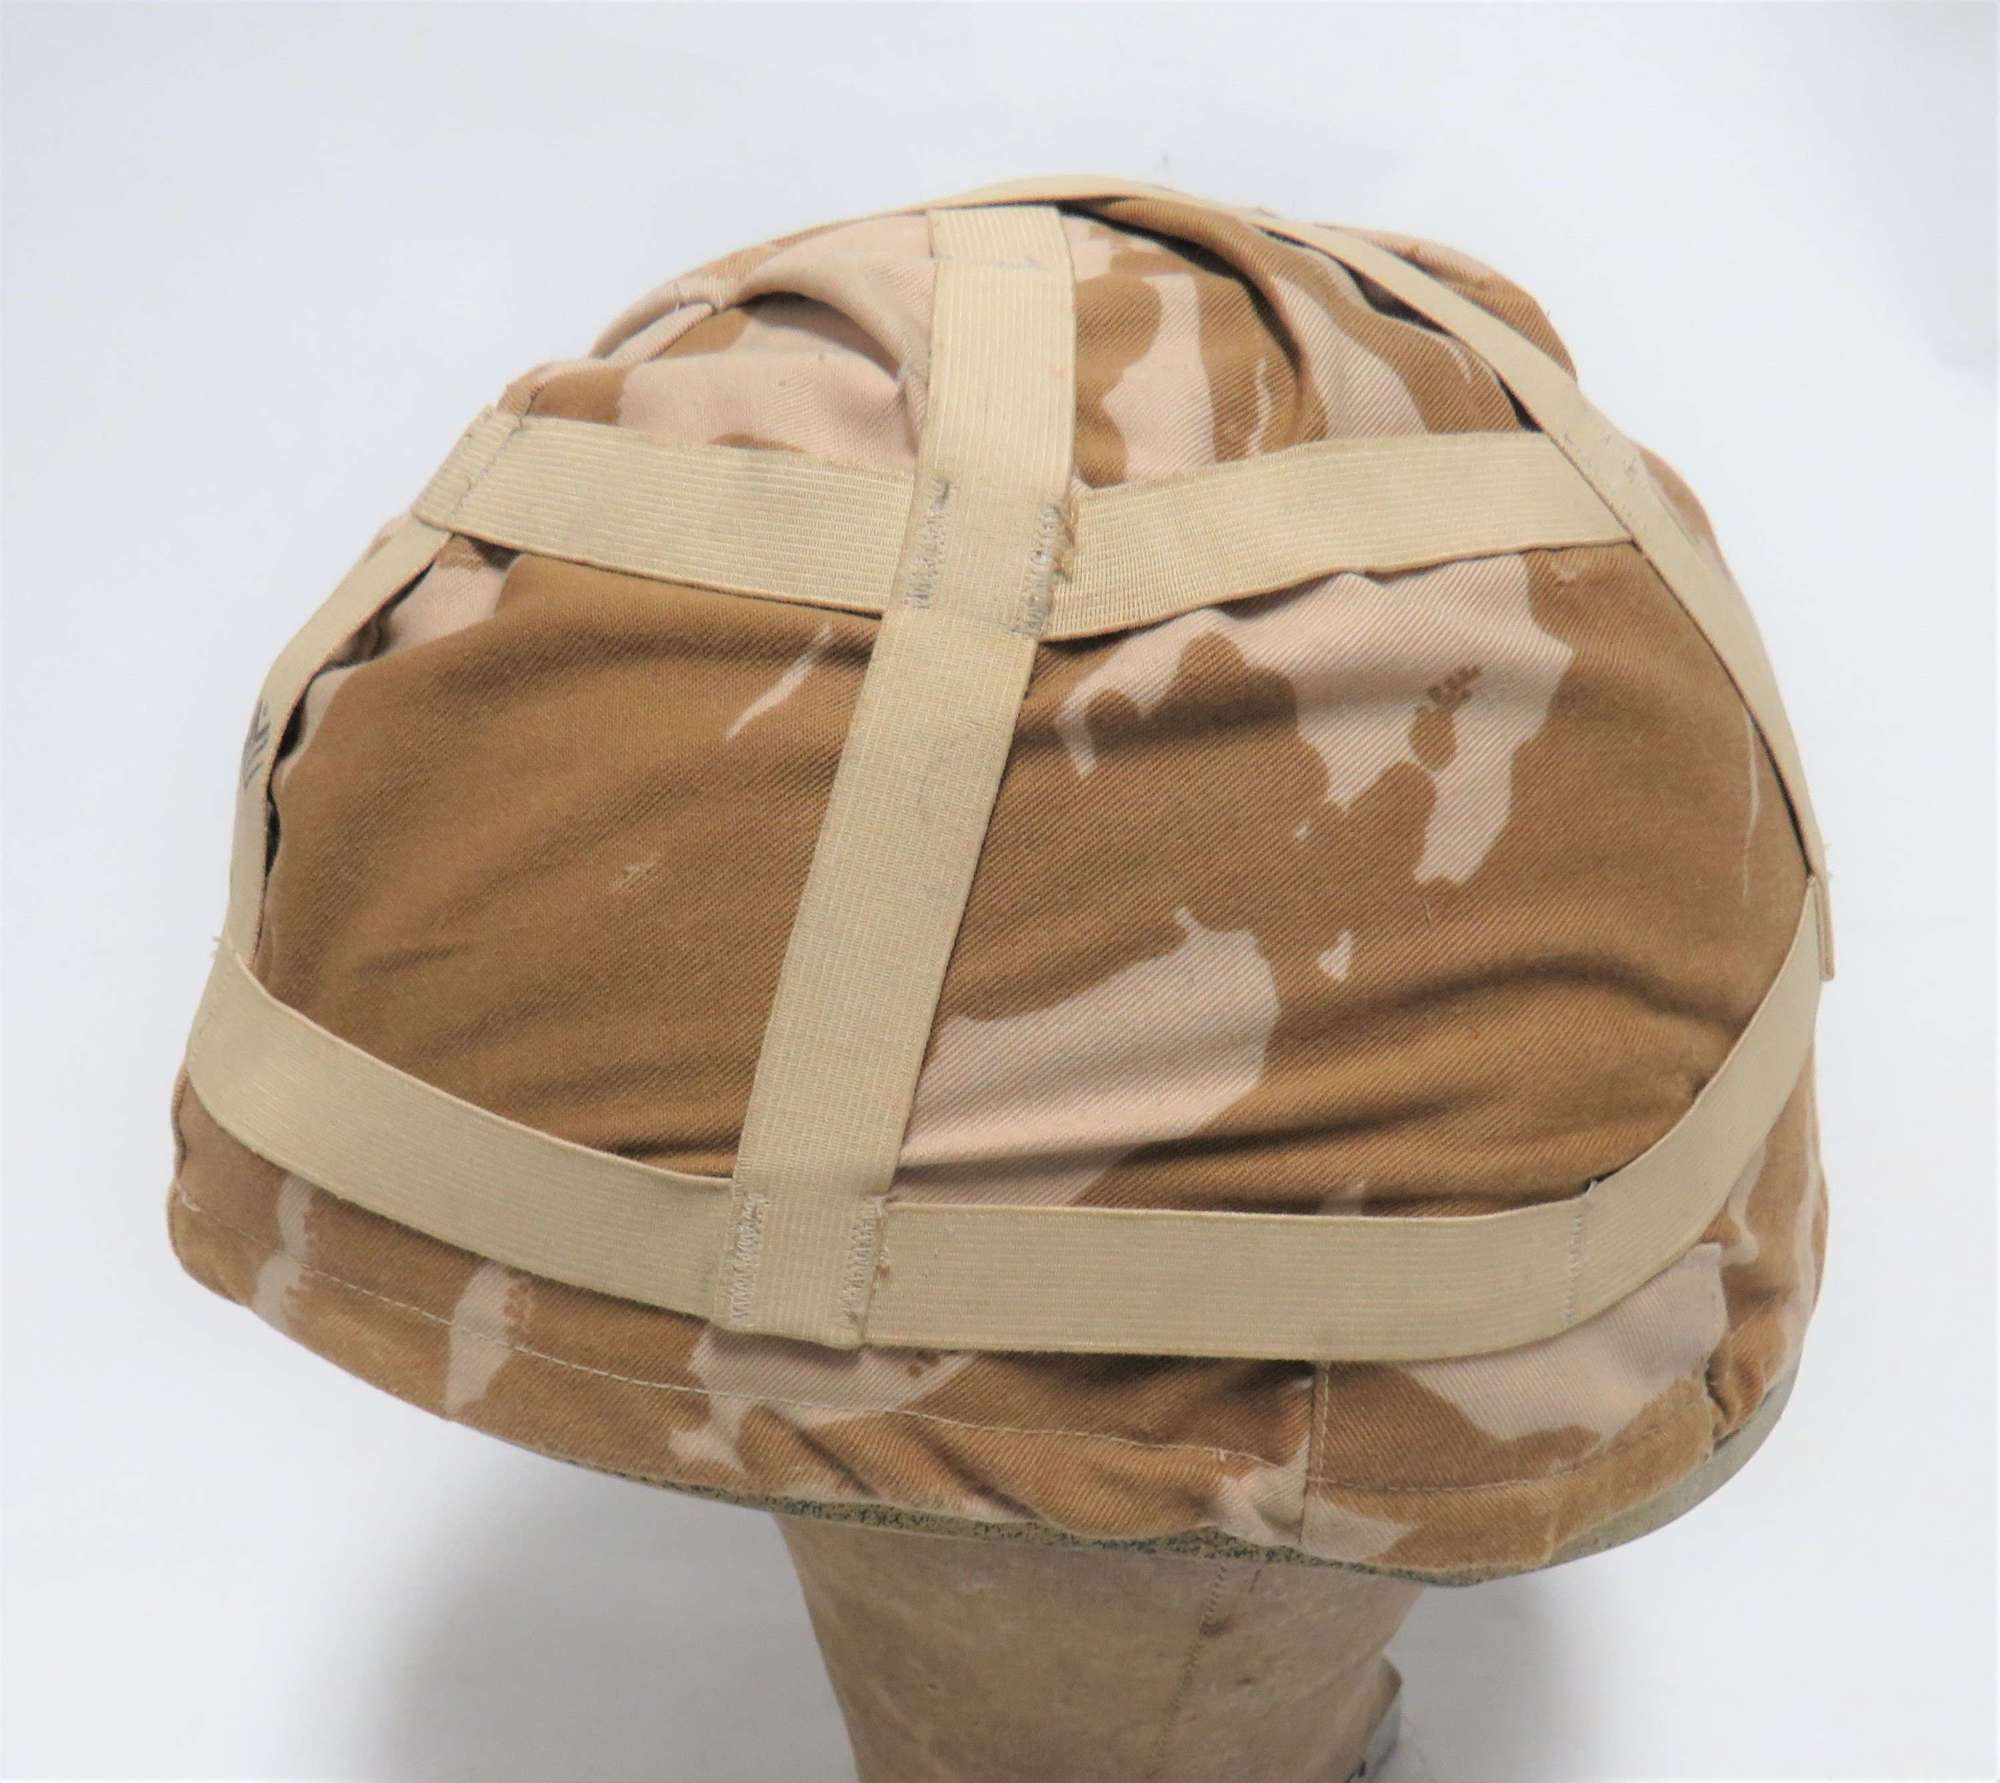 Gulf War Period British Forces Combat Helmet